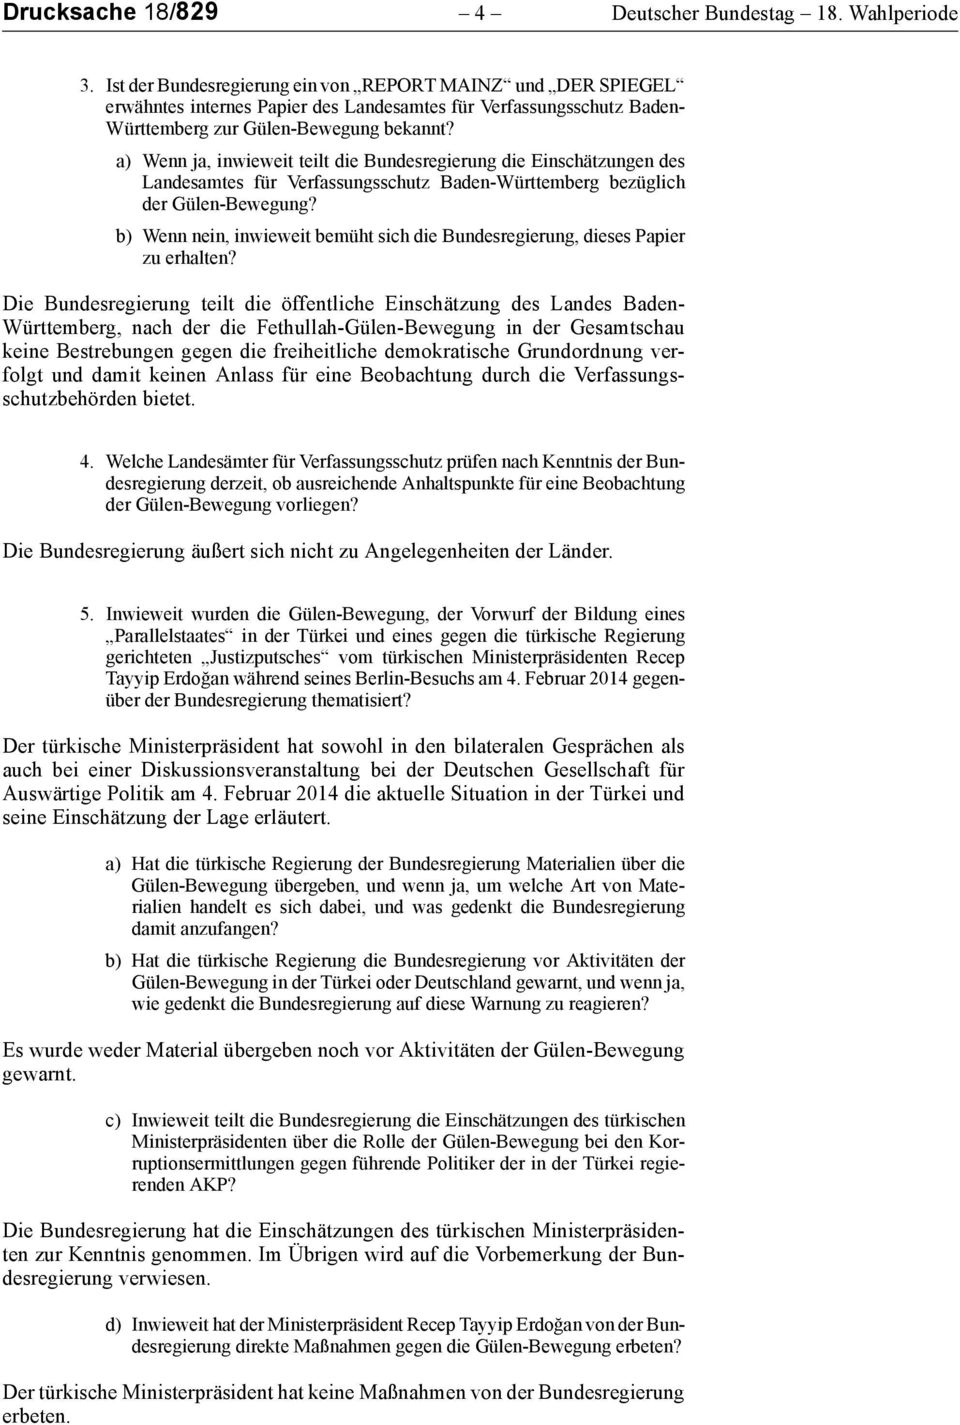 a) Wenn ja, inwieweit teilt die Bundesregierung die Einschätzungen des Landesamtes für Verfassungsschutz Baden-Württemberg bezüglich der Gülen-Bewegung?